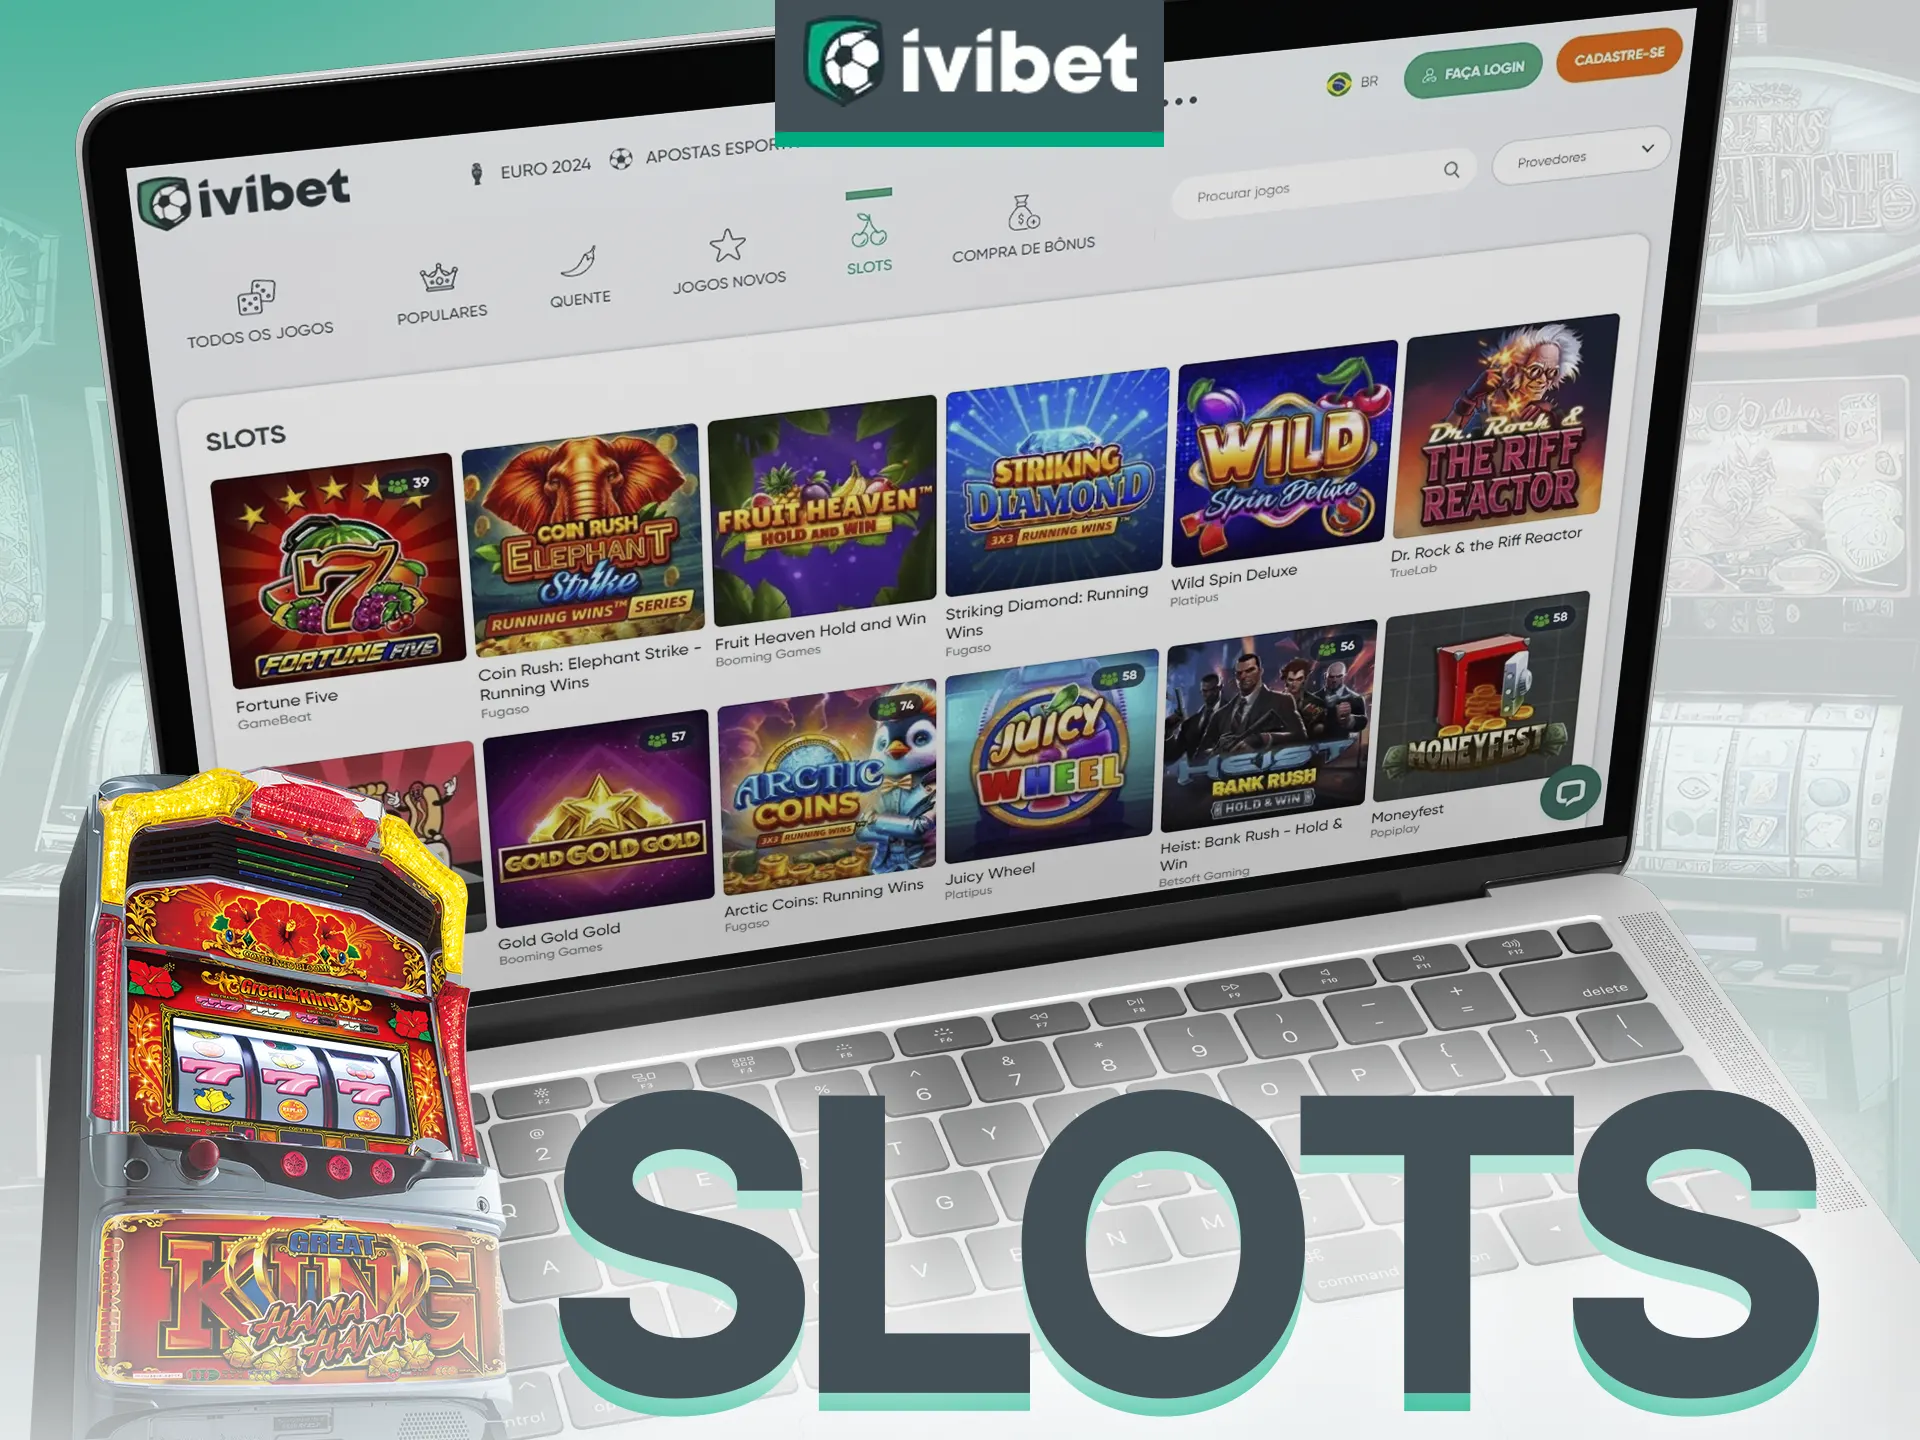 Ivibet oferece mais de 8.000 slots.